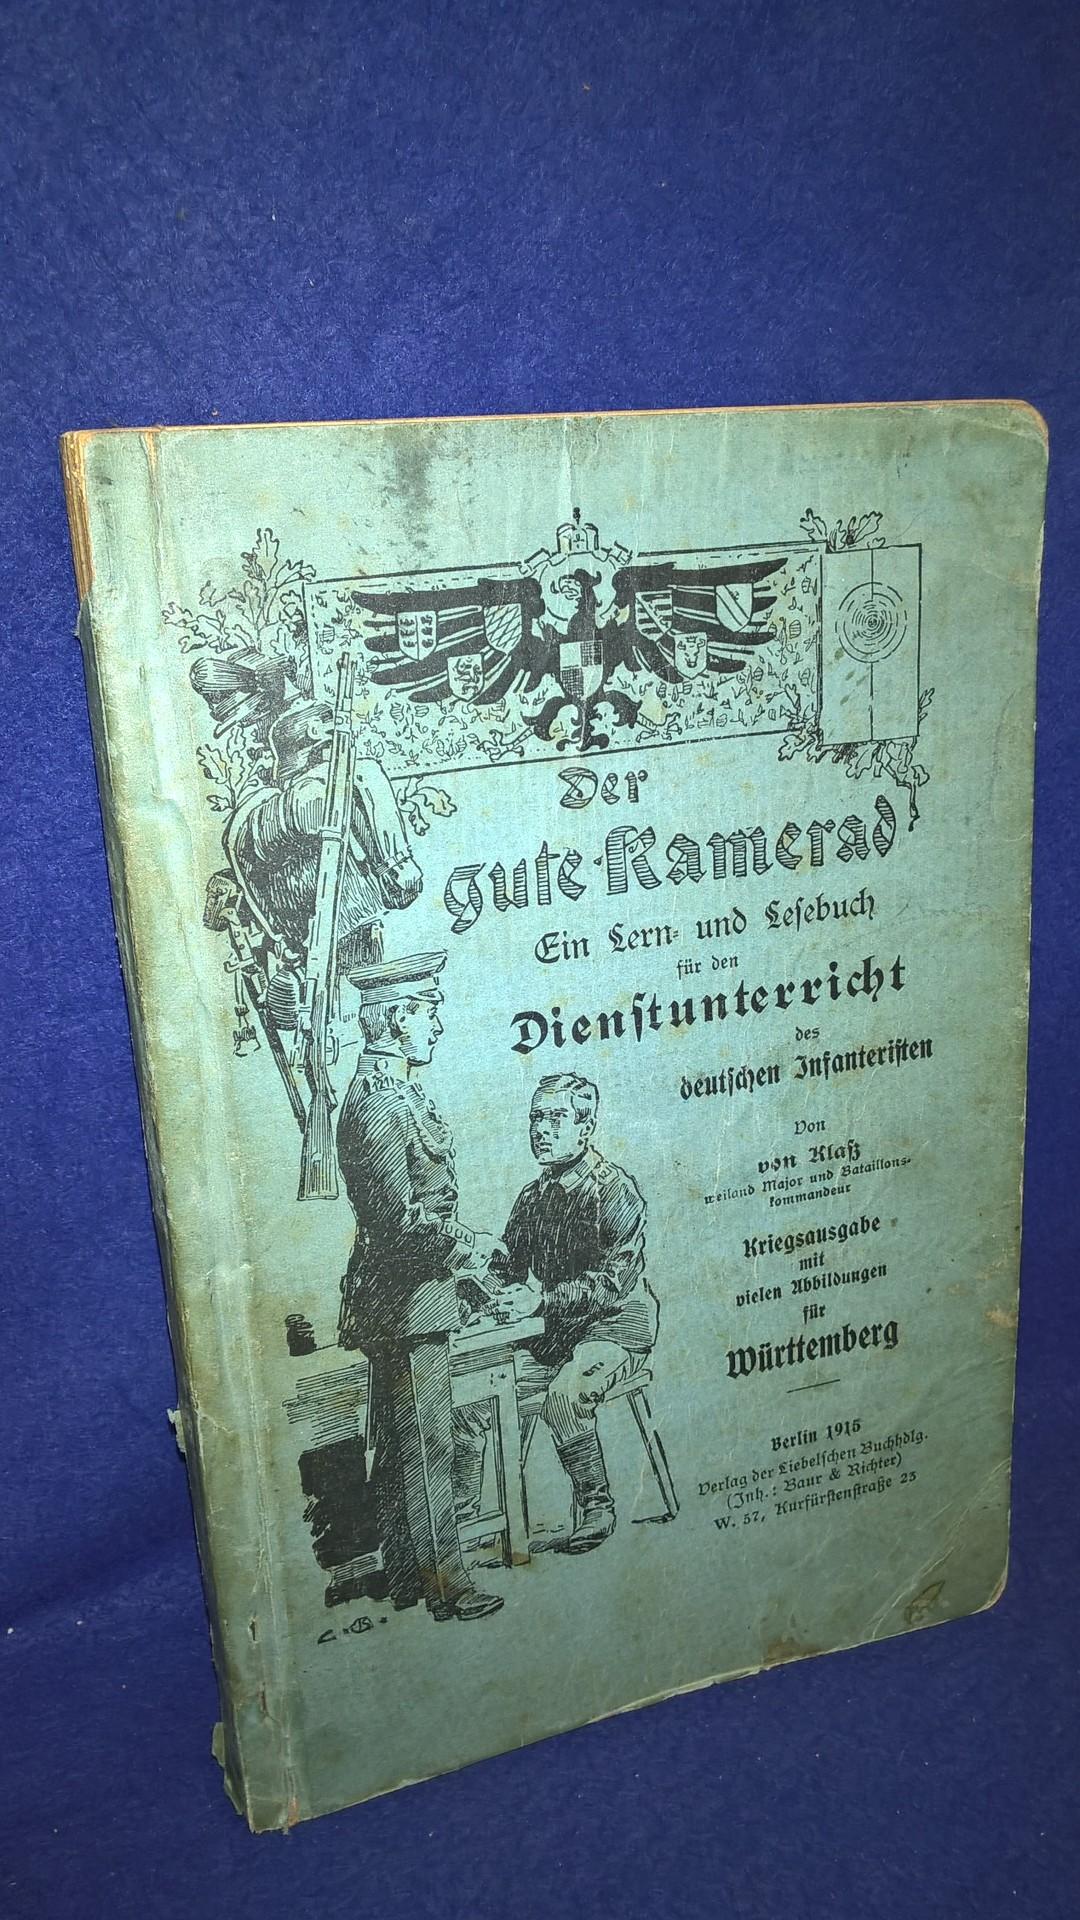 Der gute Kamerad. Ein Lern- und Lesebuch für den Dienstunterricht des deutschen Infanteristen. Ausgabe 1915 für Württemberg.